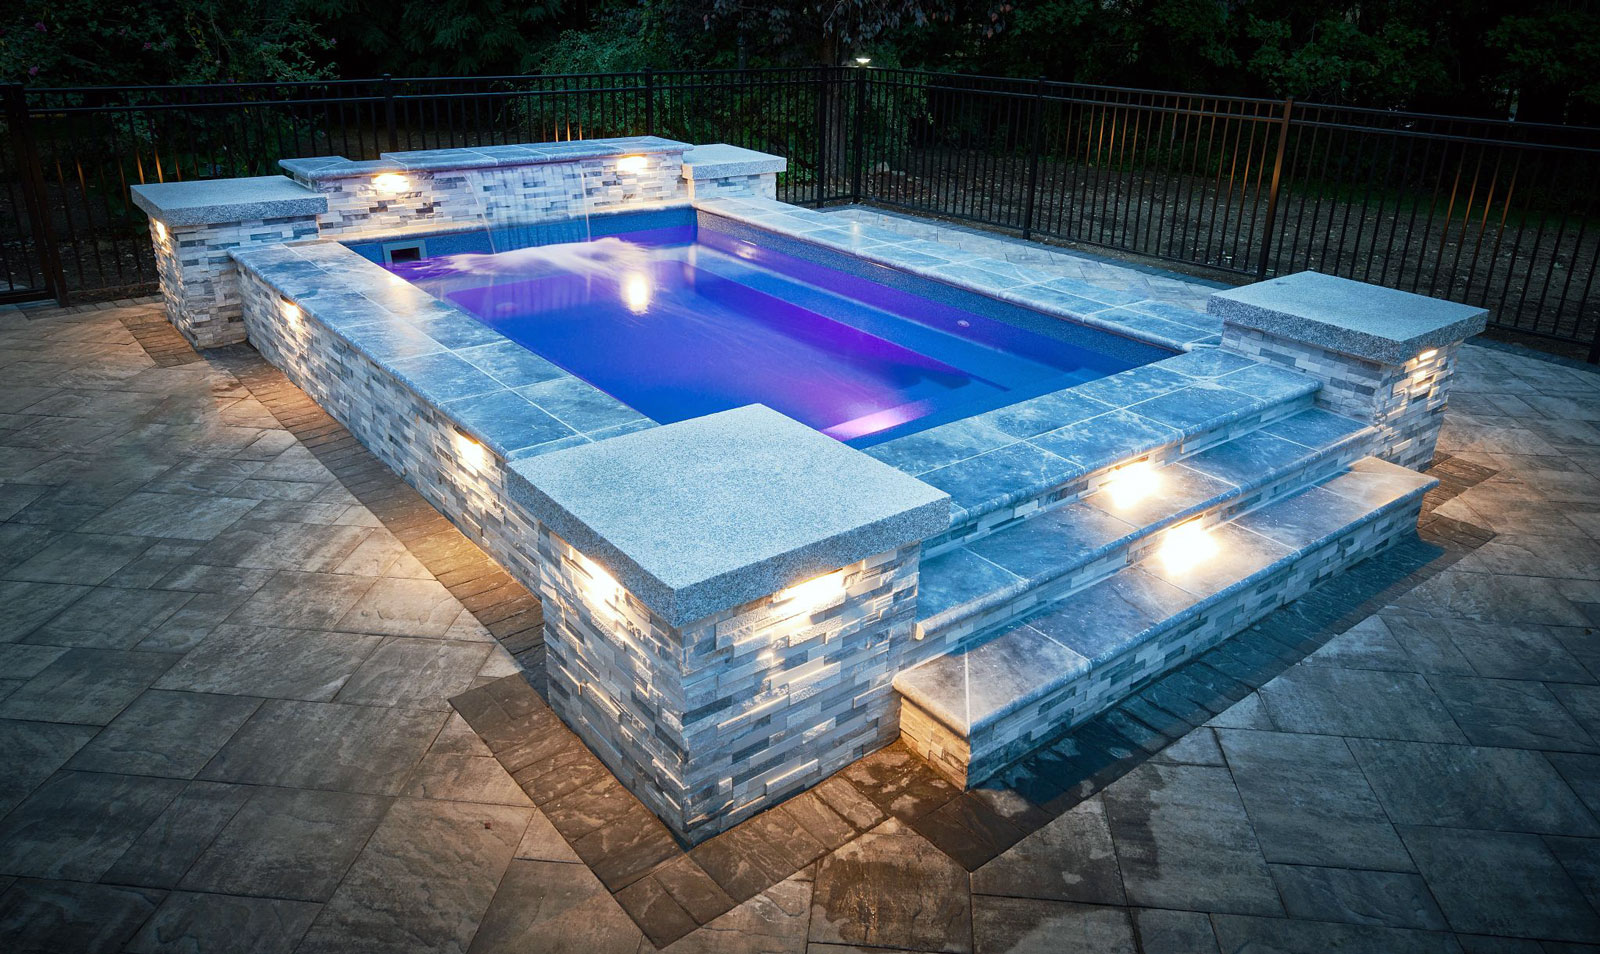 LED lumière coloré pour baignoire piscine sous-marine - Cdiscount Jardin